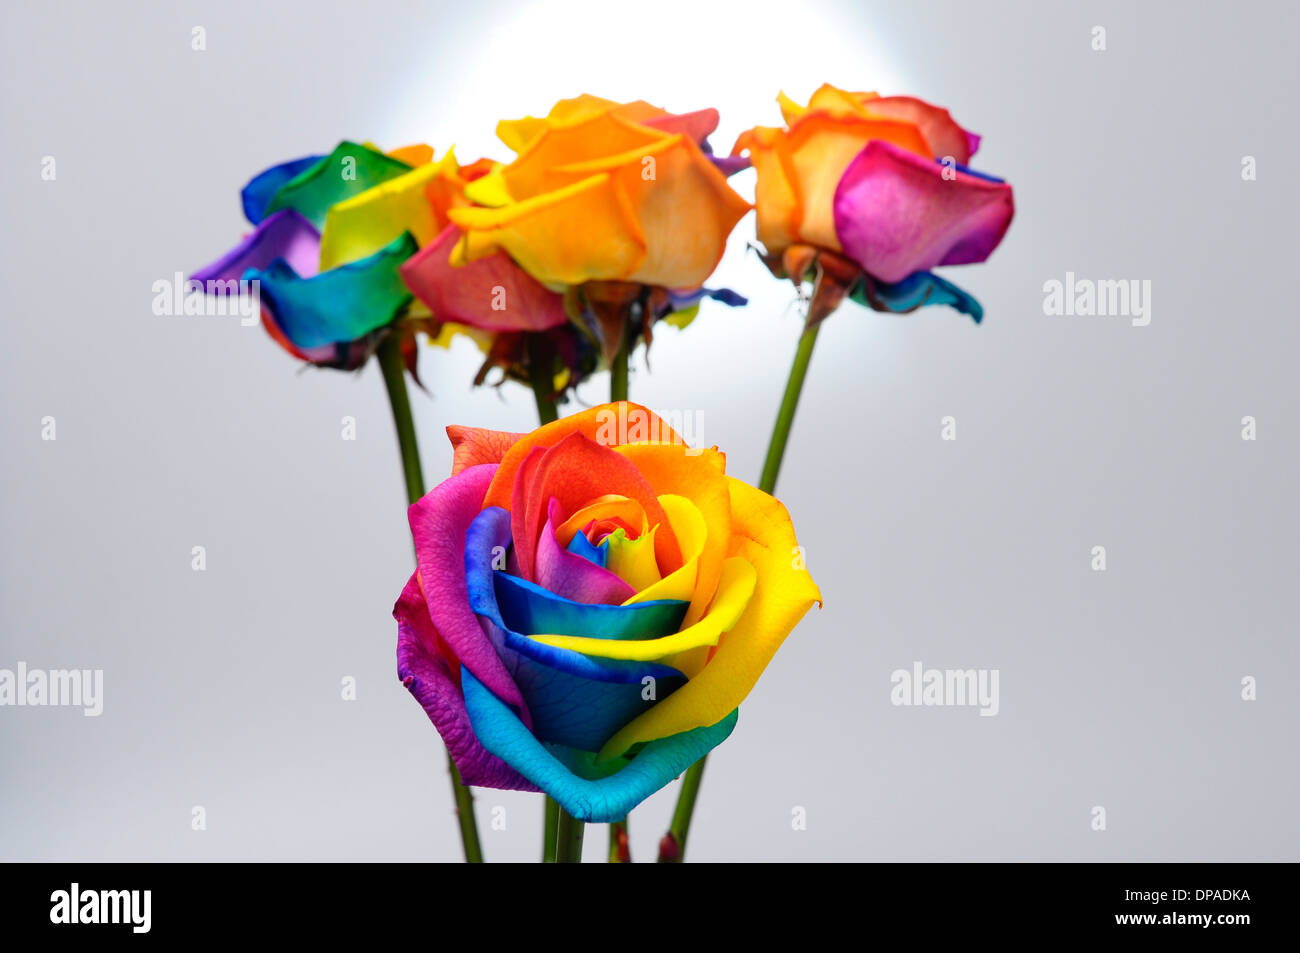 Bouquet de fleur : rose avec pétales de couleur arc-en-ciel Banque D'Images